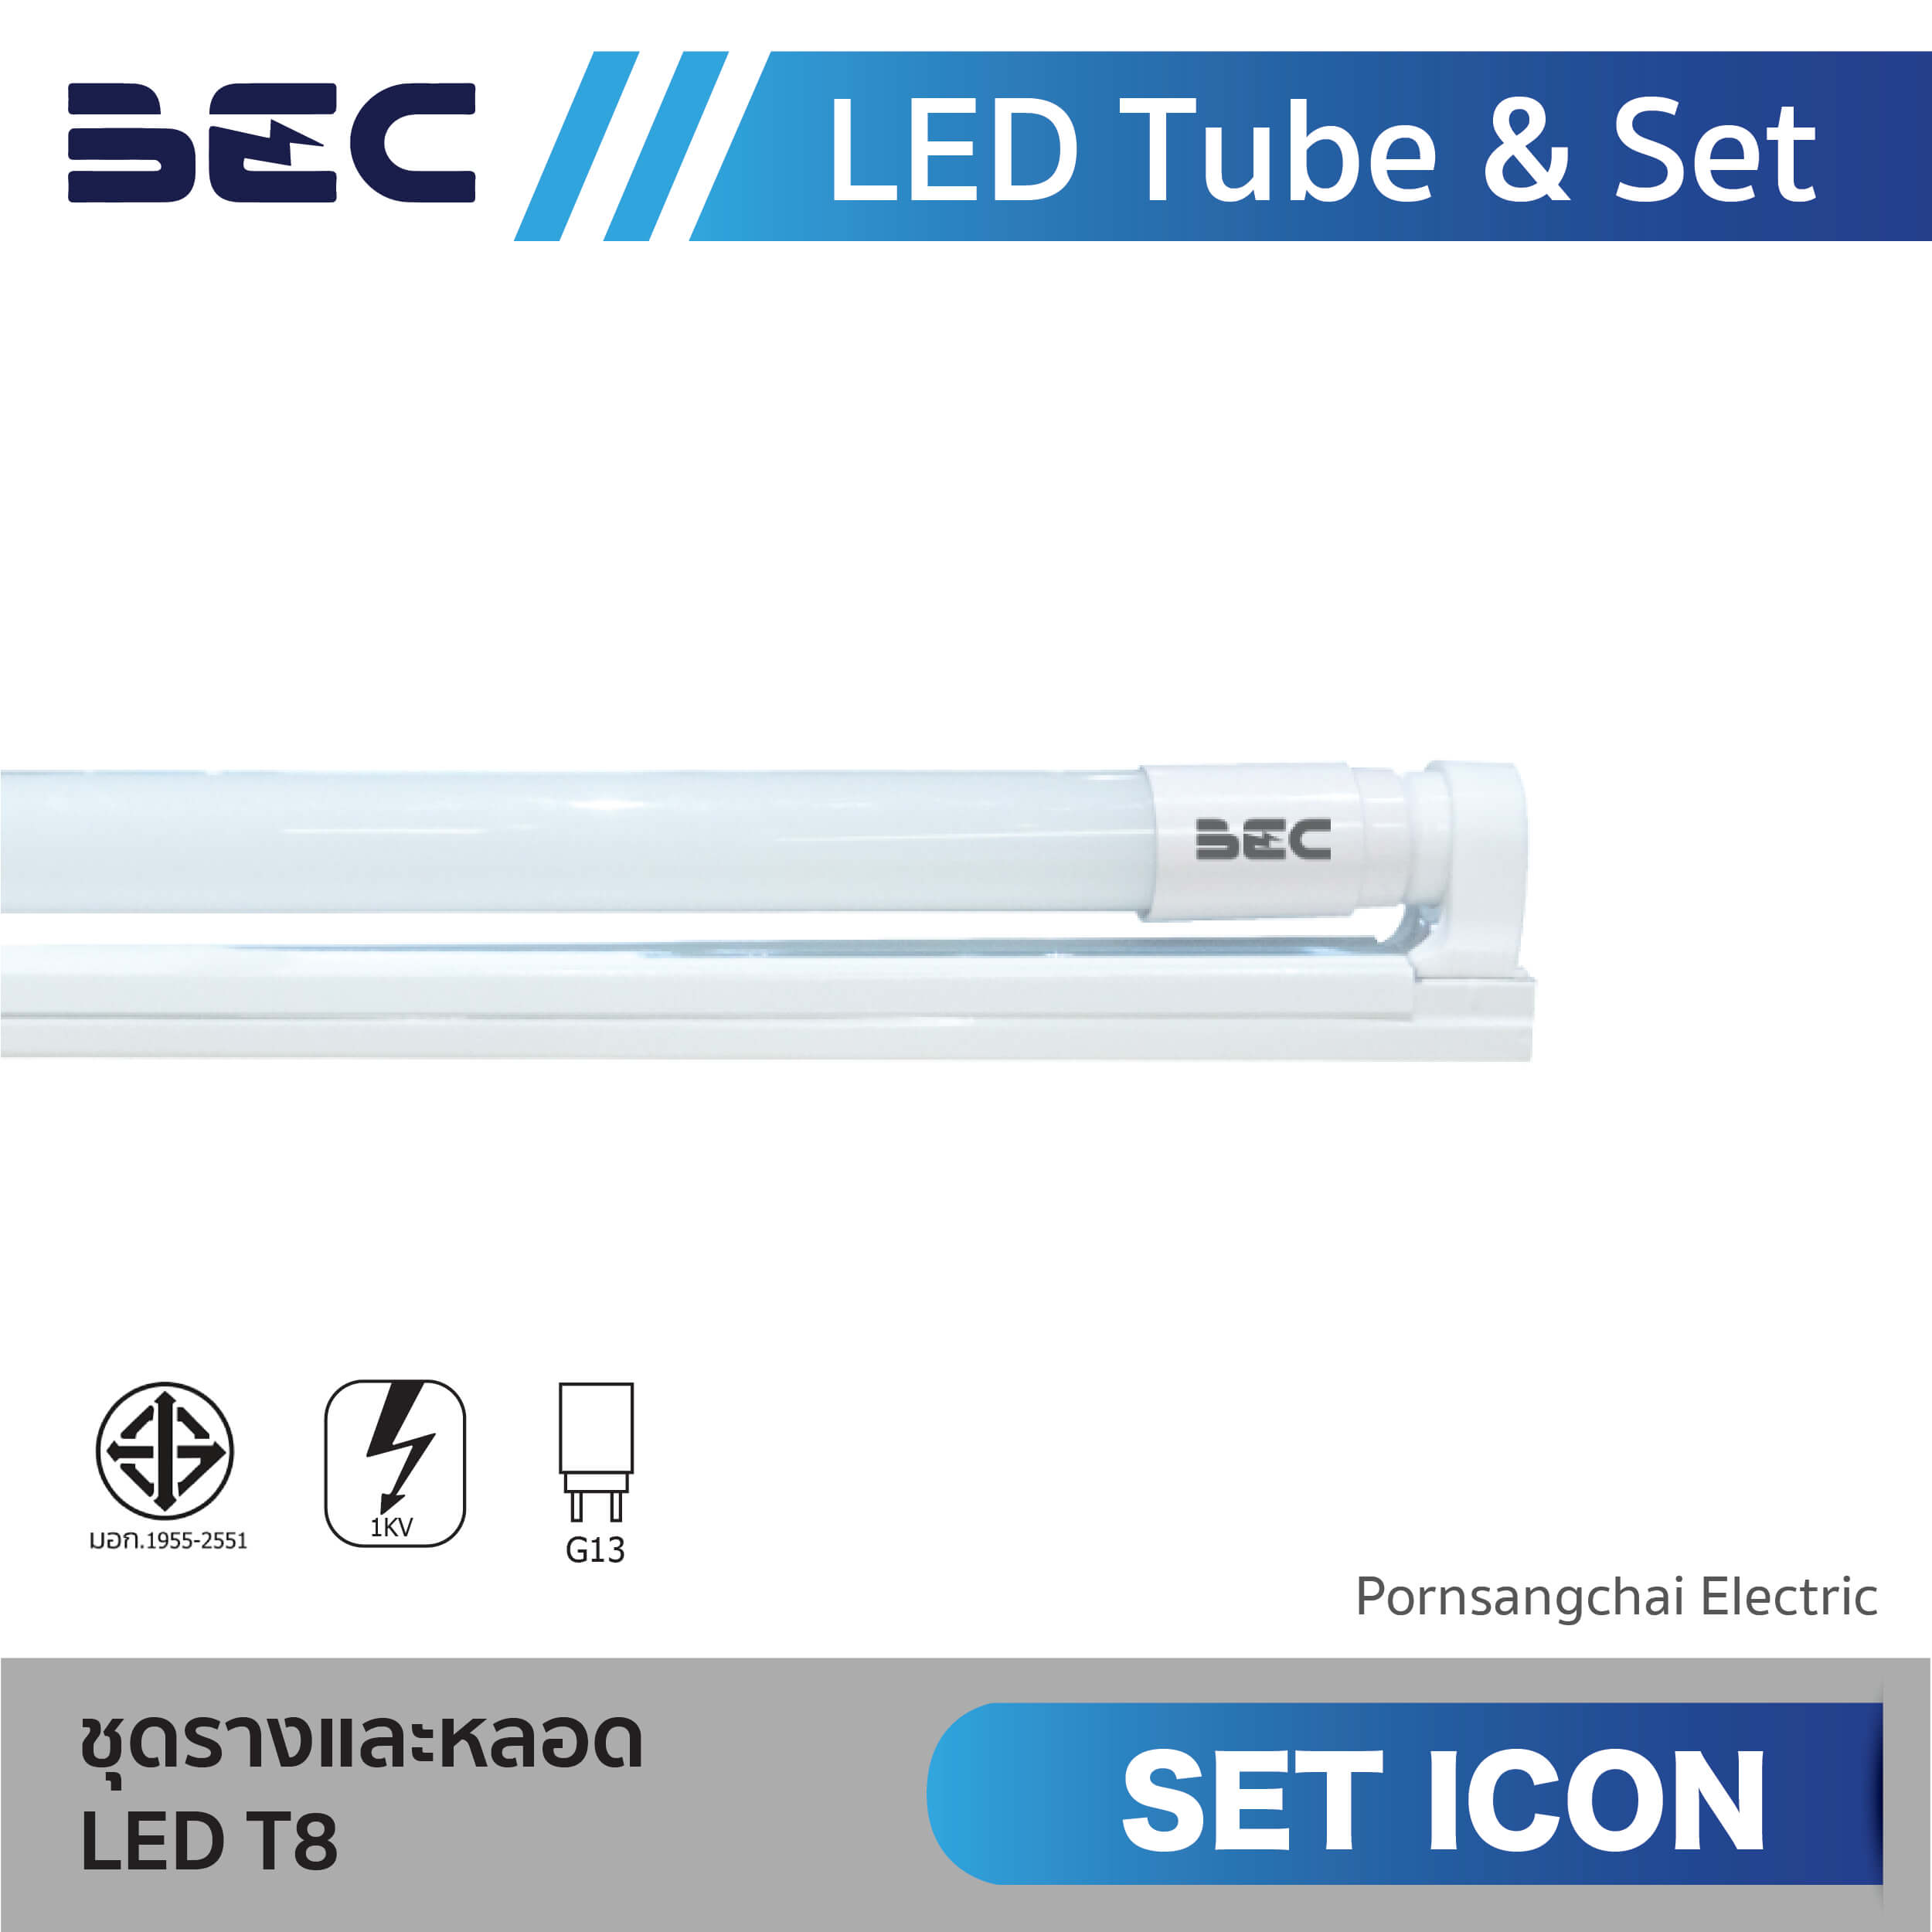 BEC ชุดรางและหลอด LED T8 รุ่น SET ICON